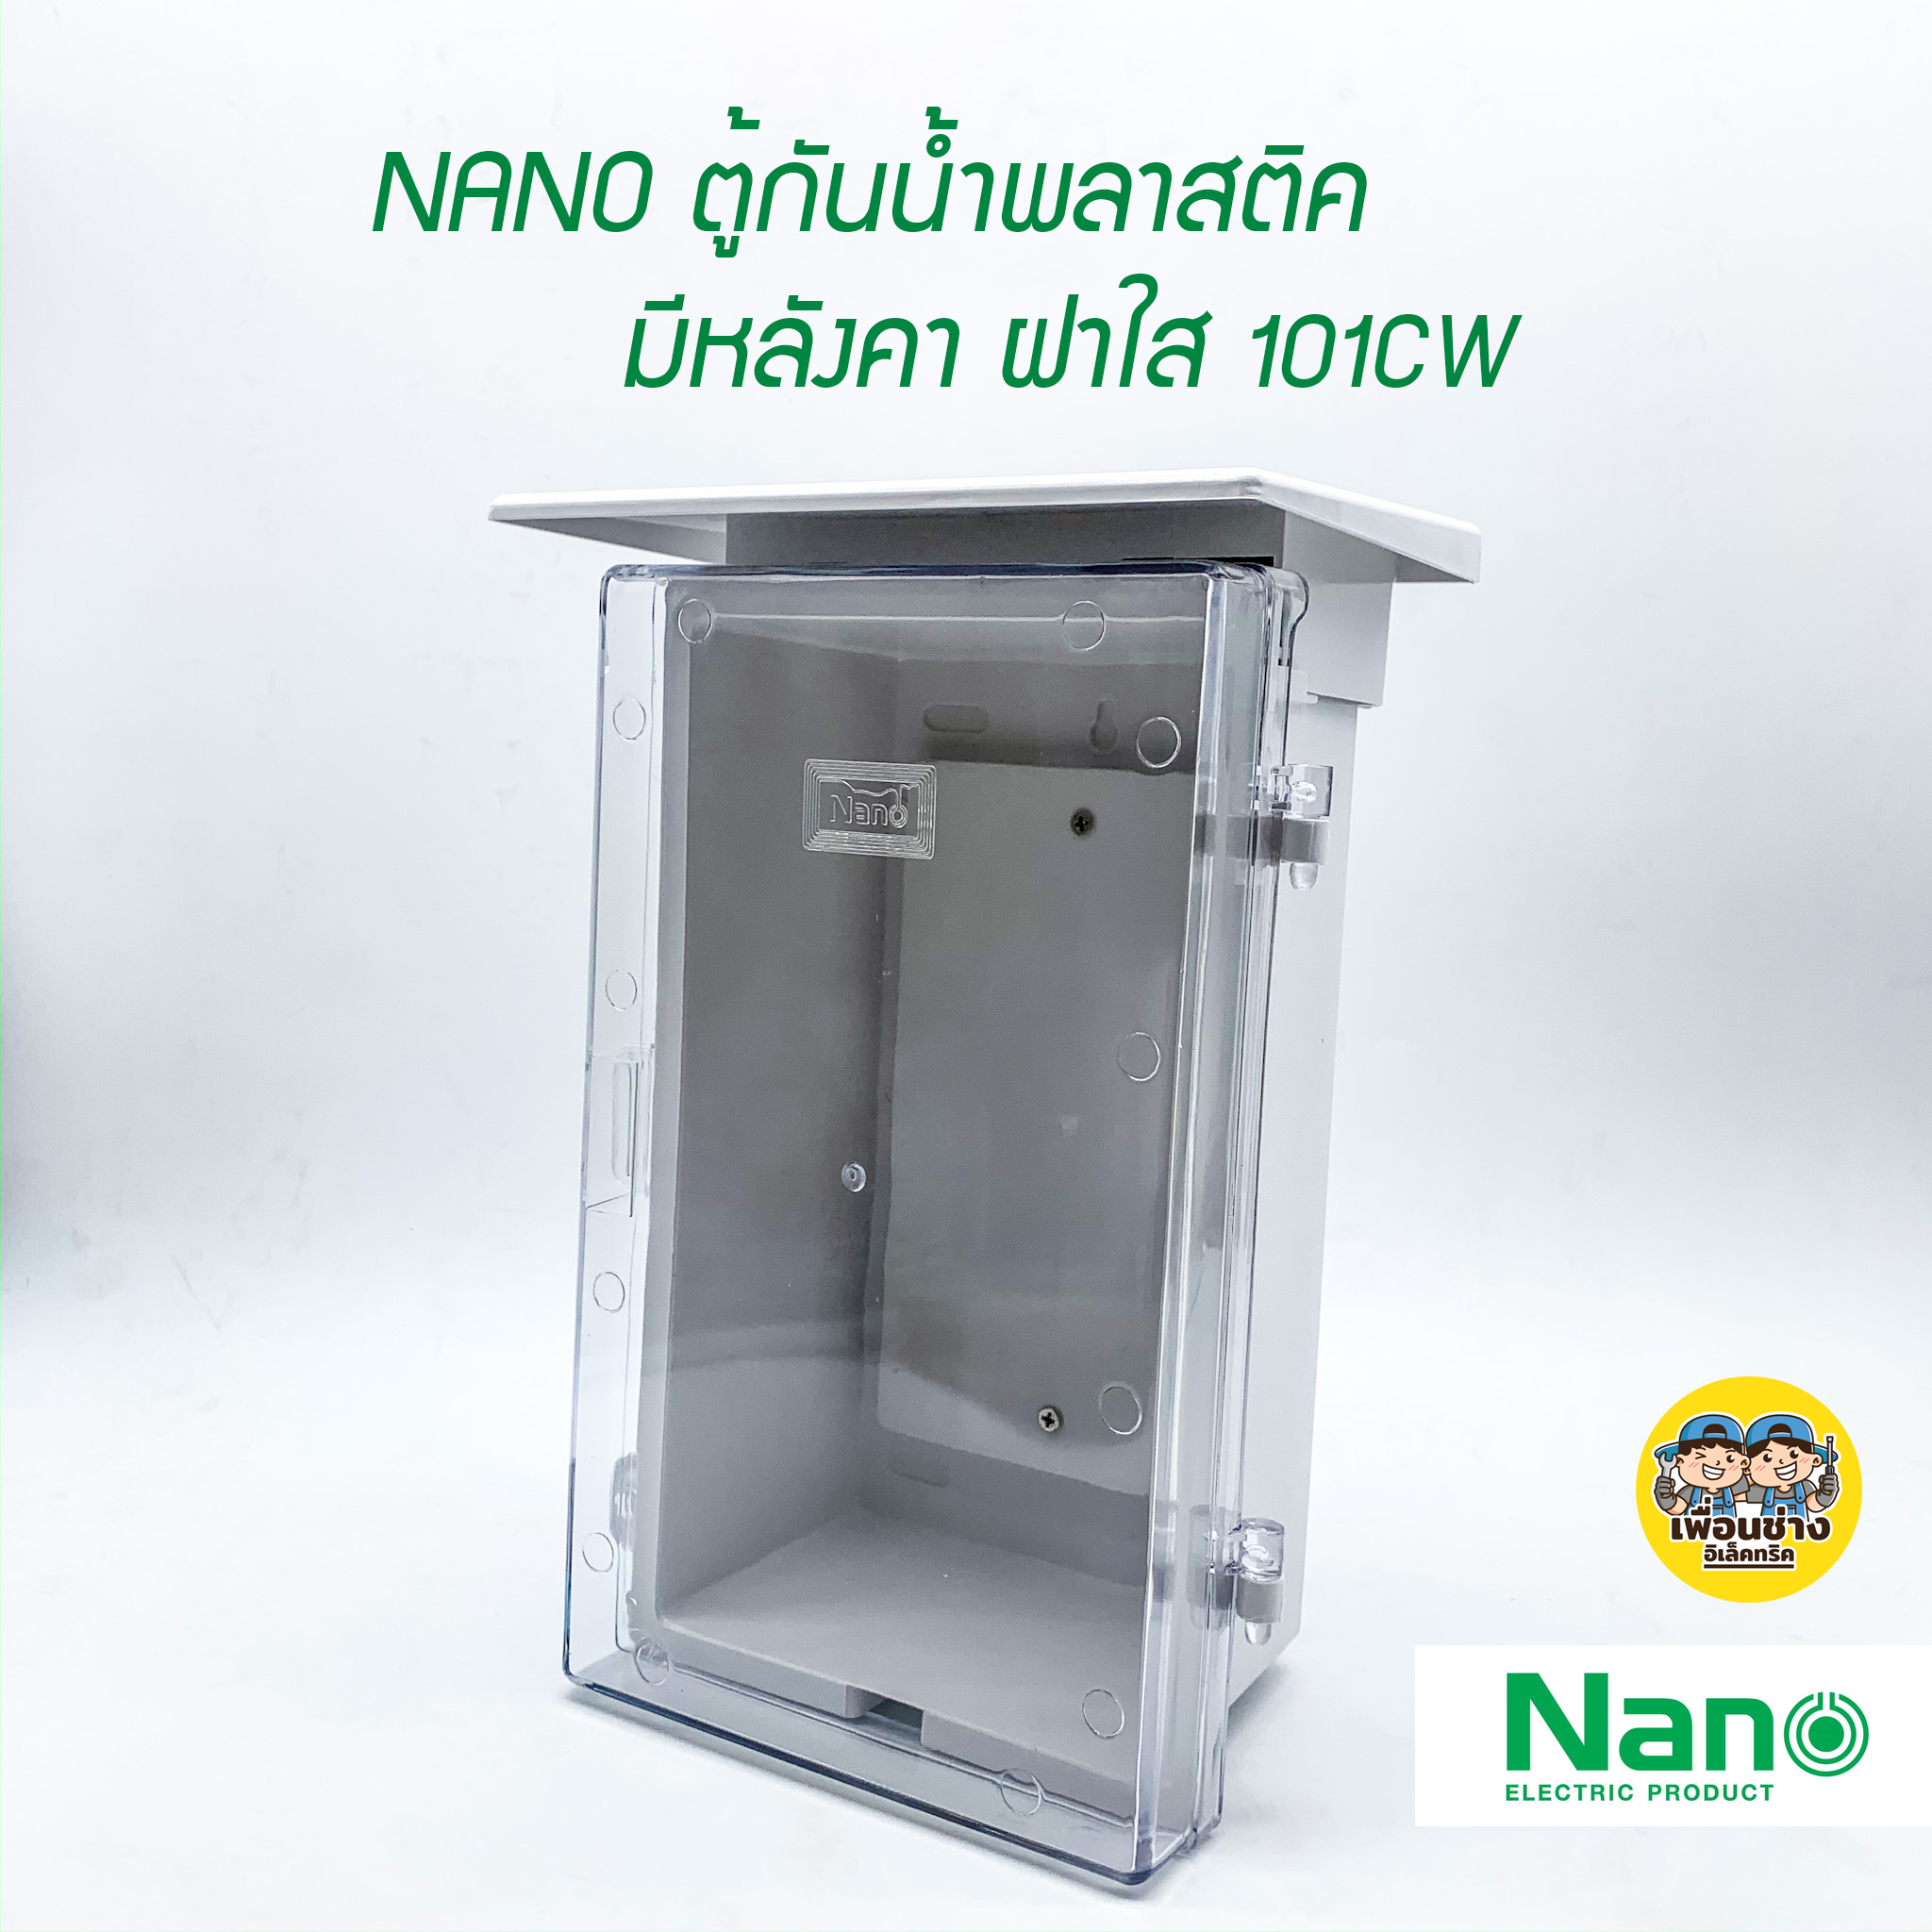 ตู้กันน้ำพลาสติก NANO สีขาว ฝาใส มีหลังคา 101CW